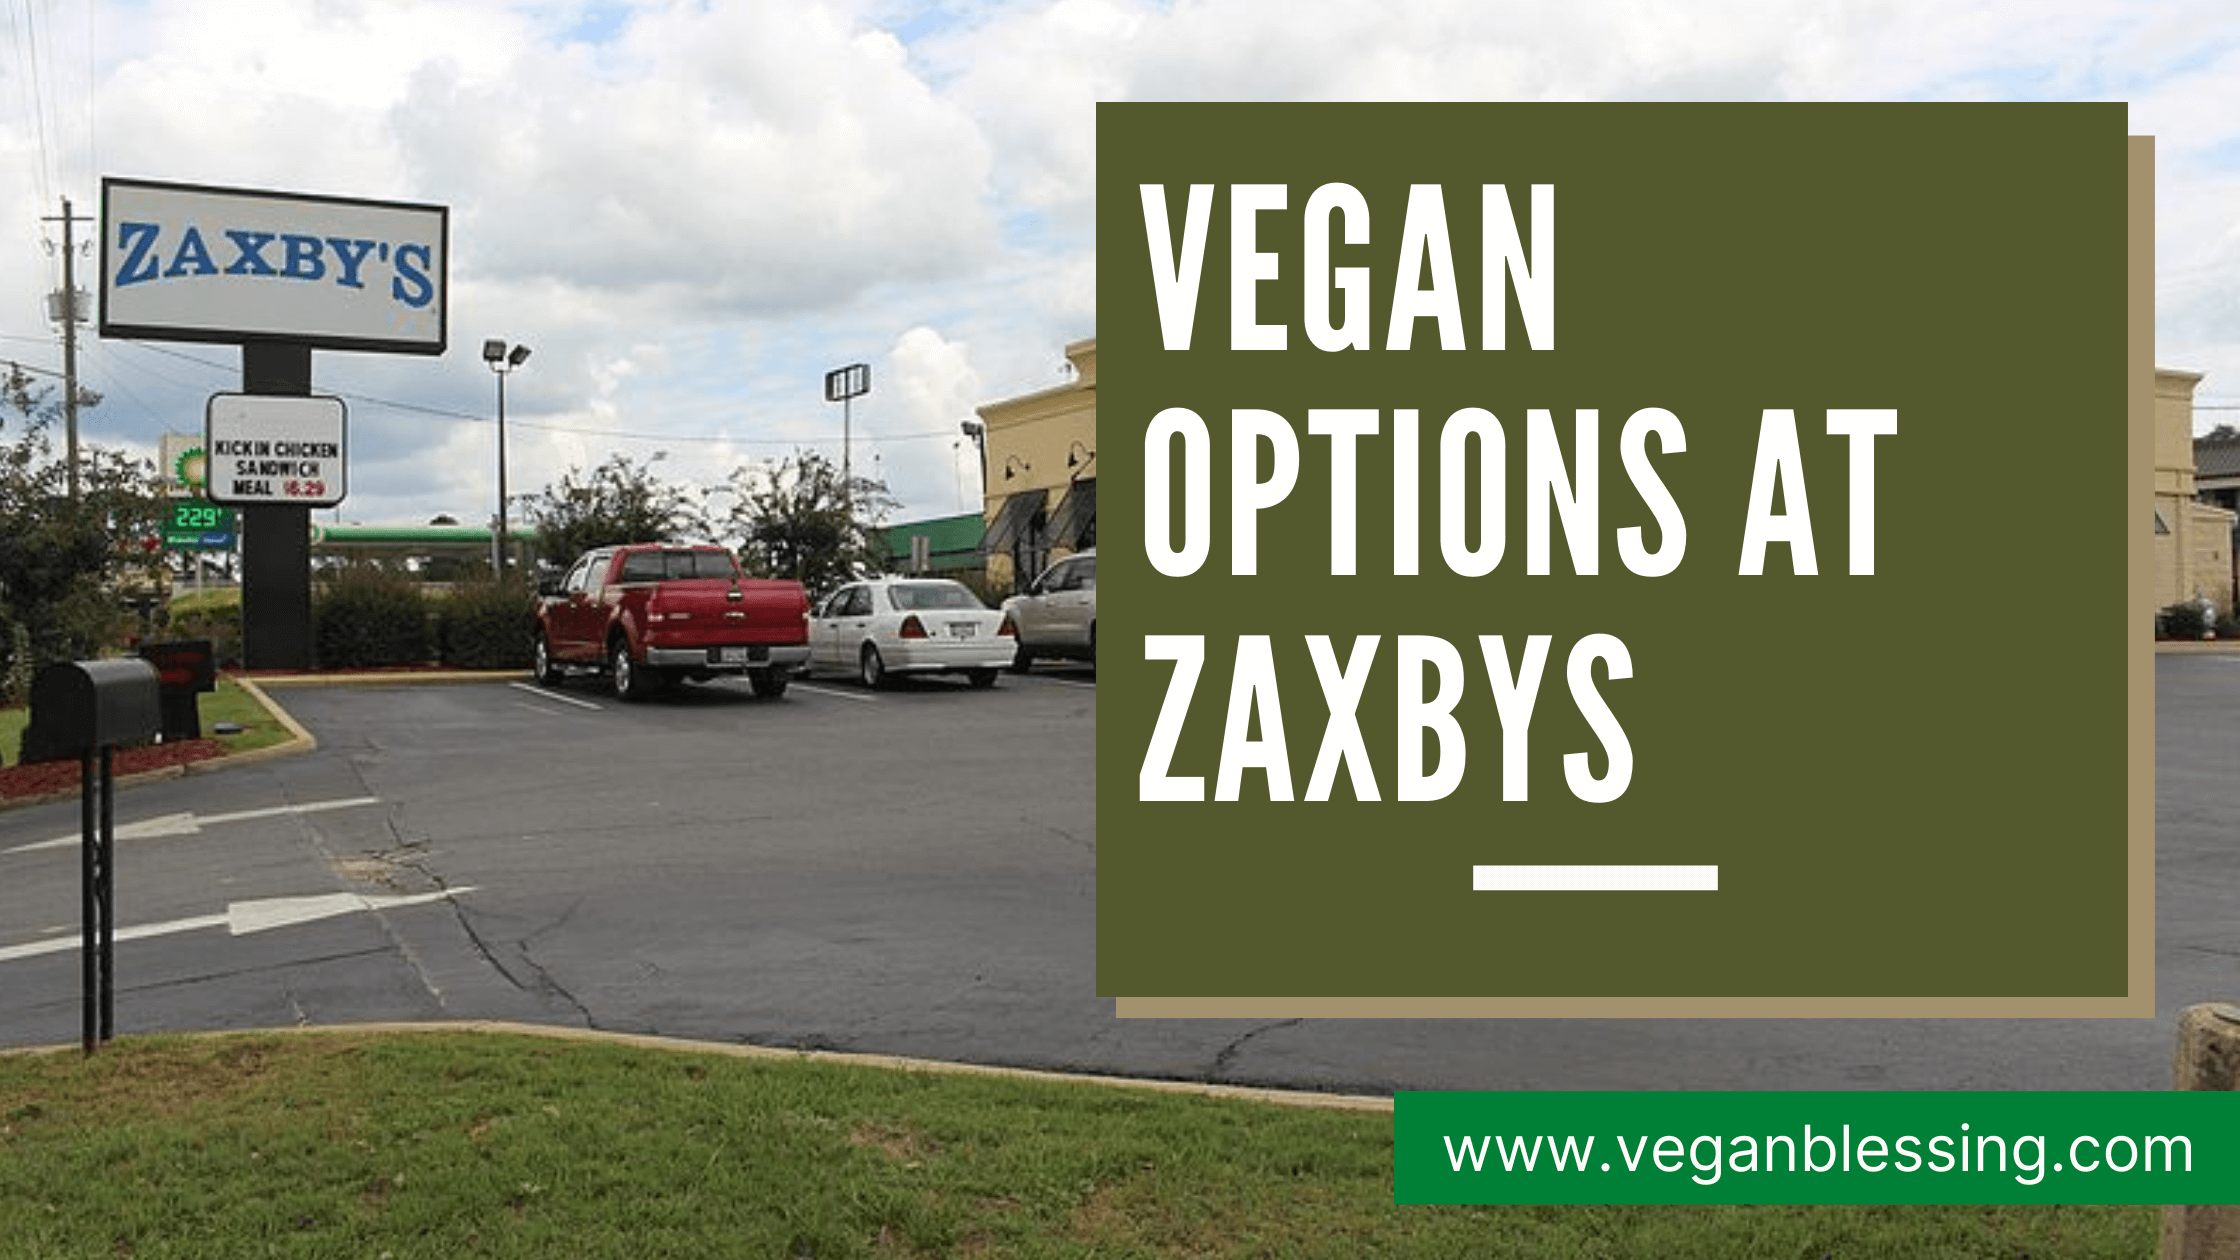 Vegan Options at Zaxbys